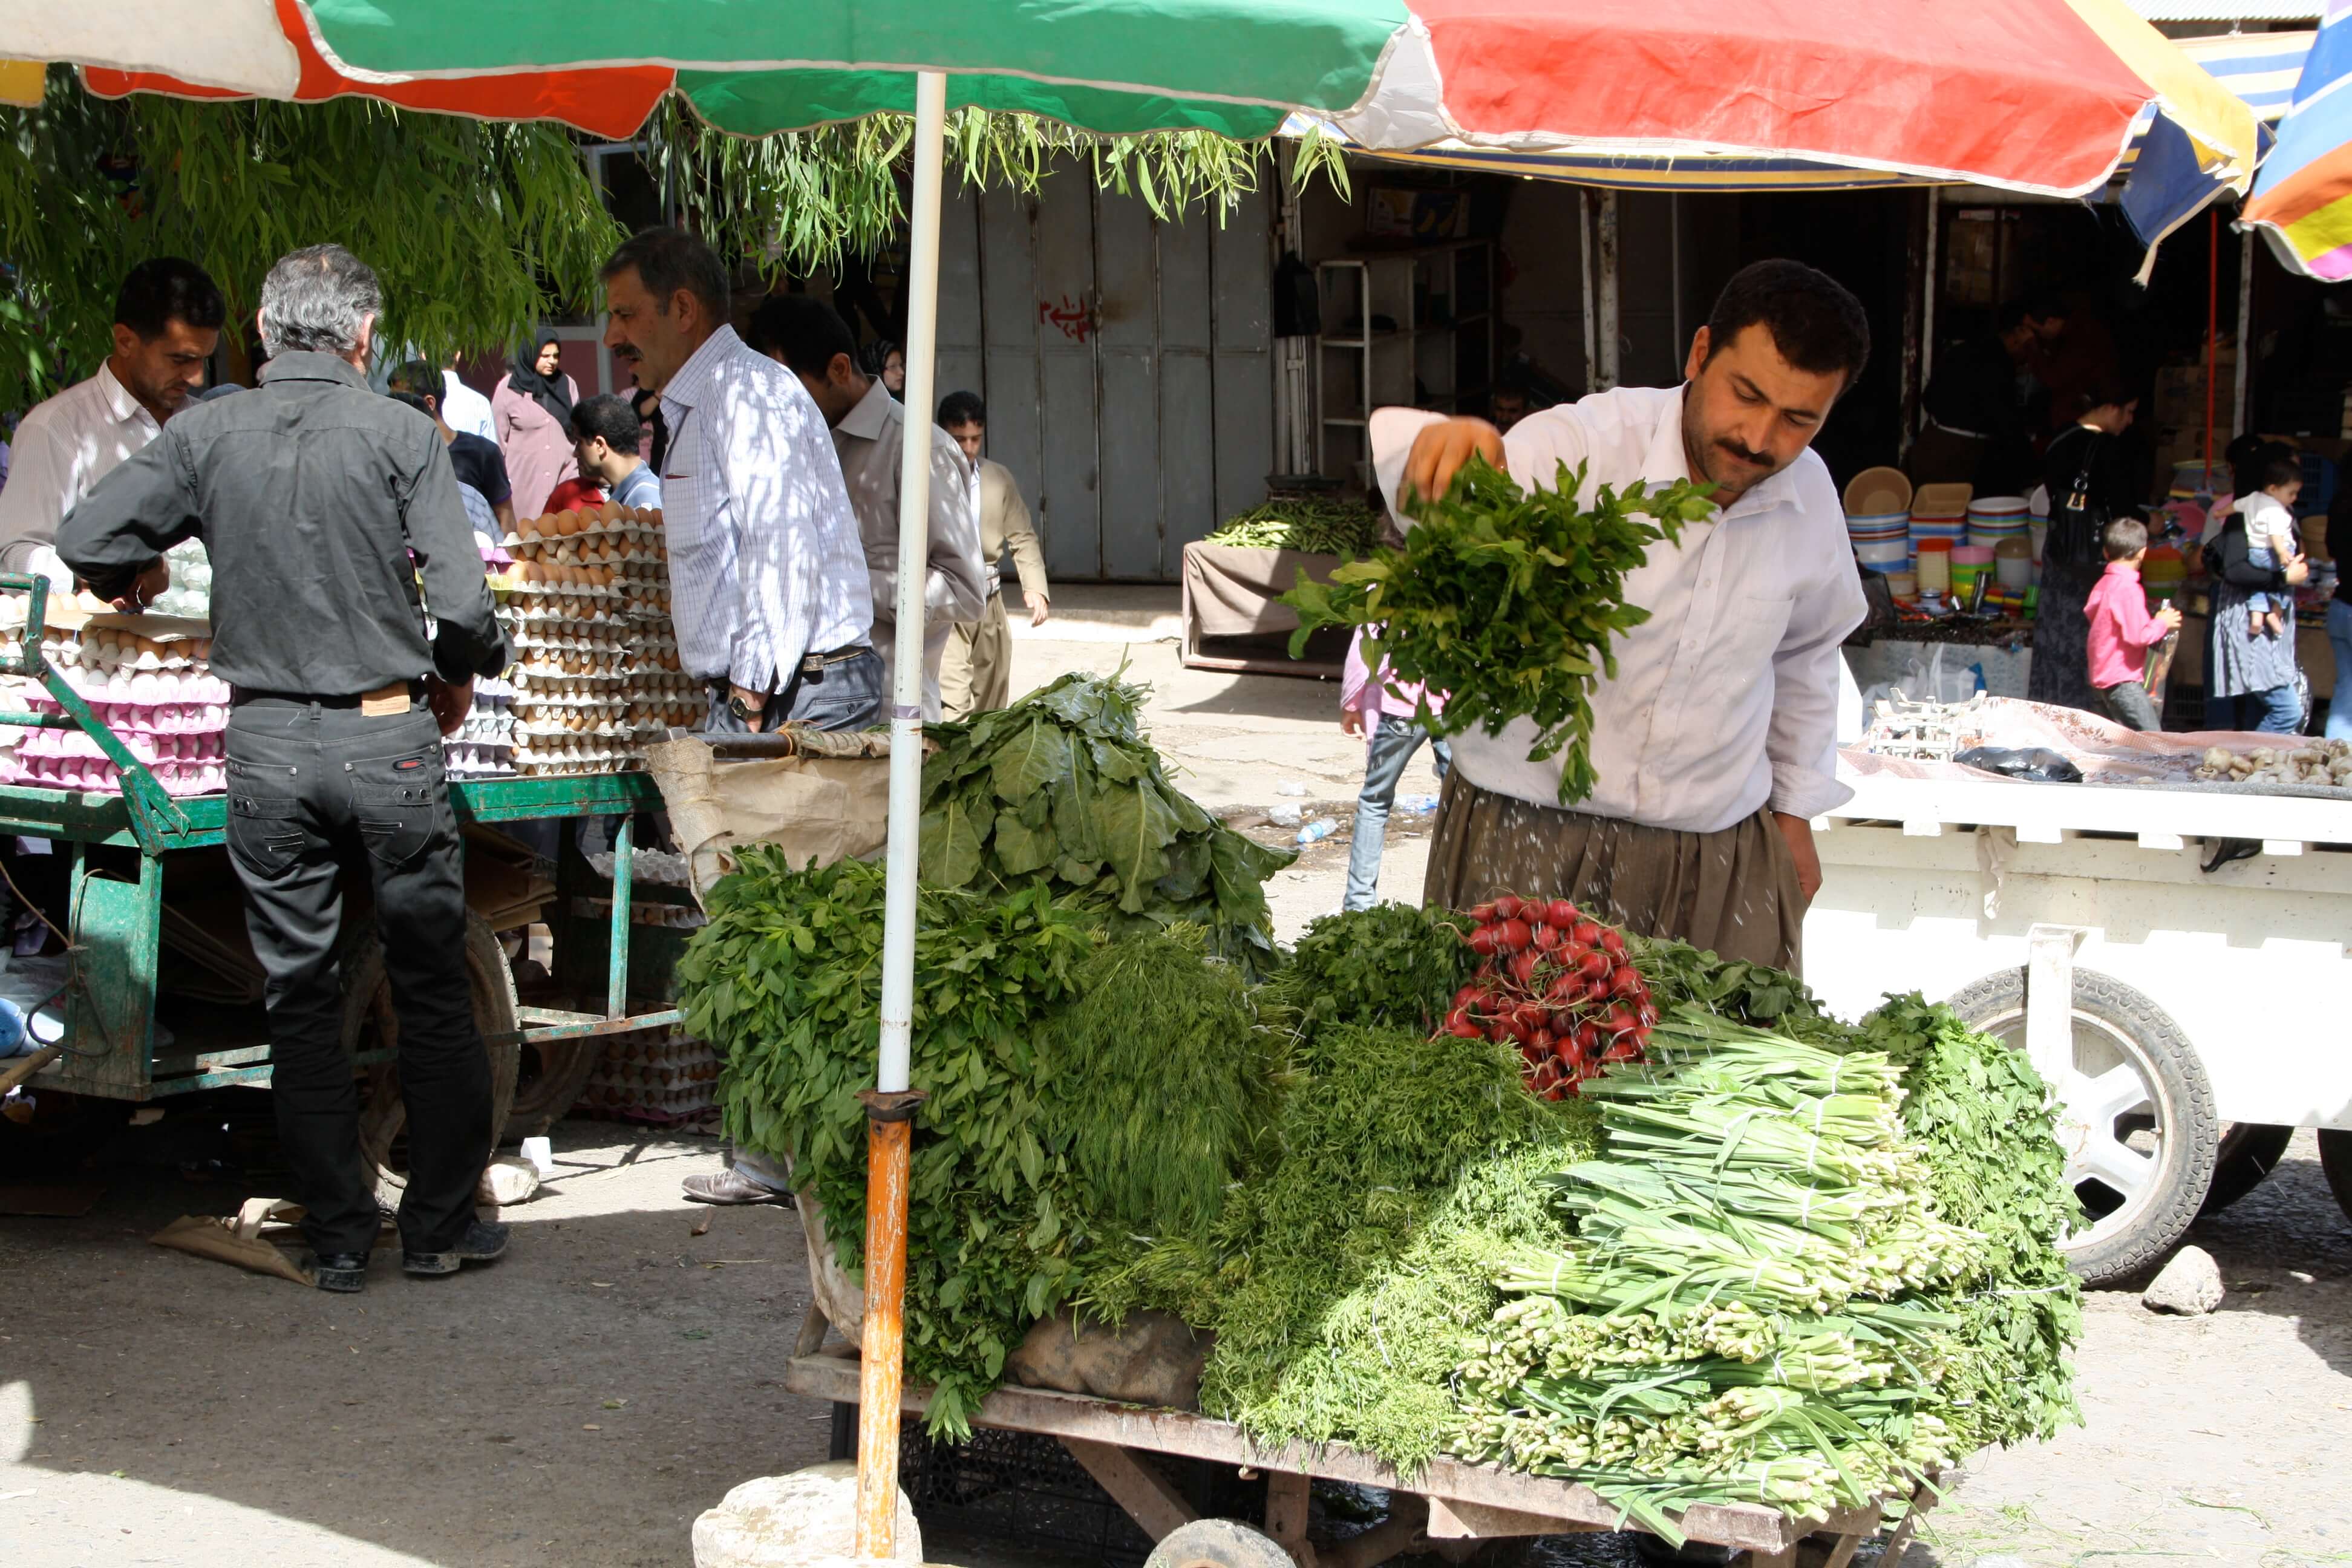 irak, stal op straat groente.jpg